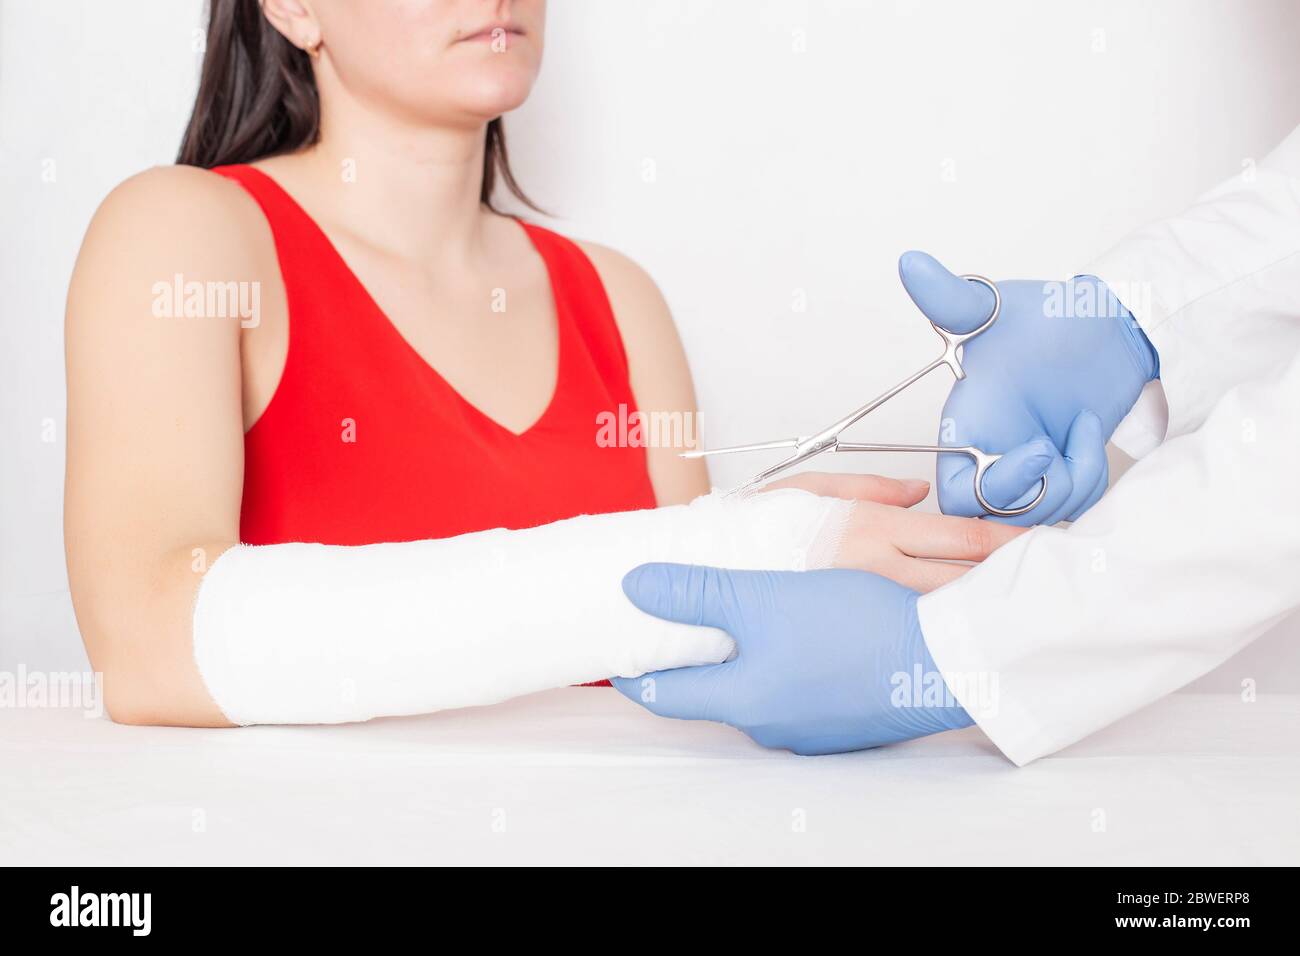 Le médecin traumatologue enlève le bandage de fixation pour une fille qui a une déchirure et une entorse sur son bras, médical, ciseaux chirurgicaux Banque D'Images